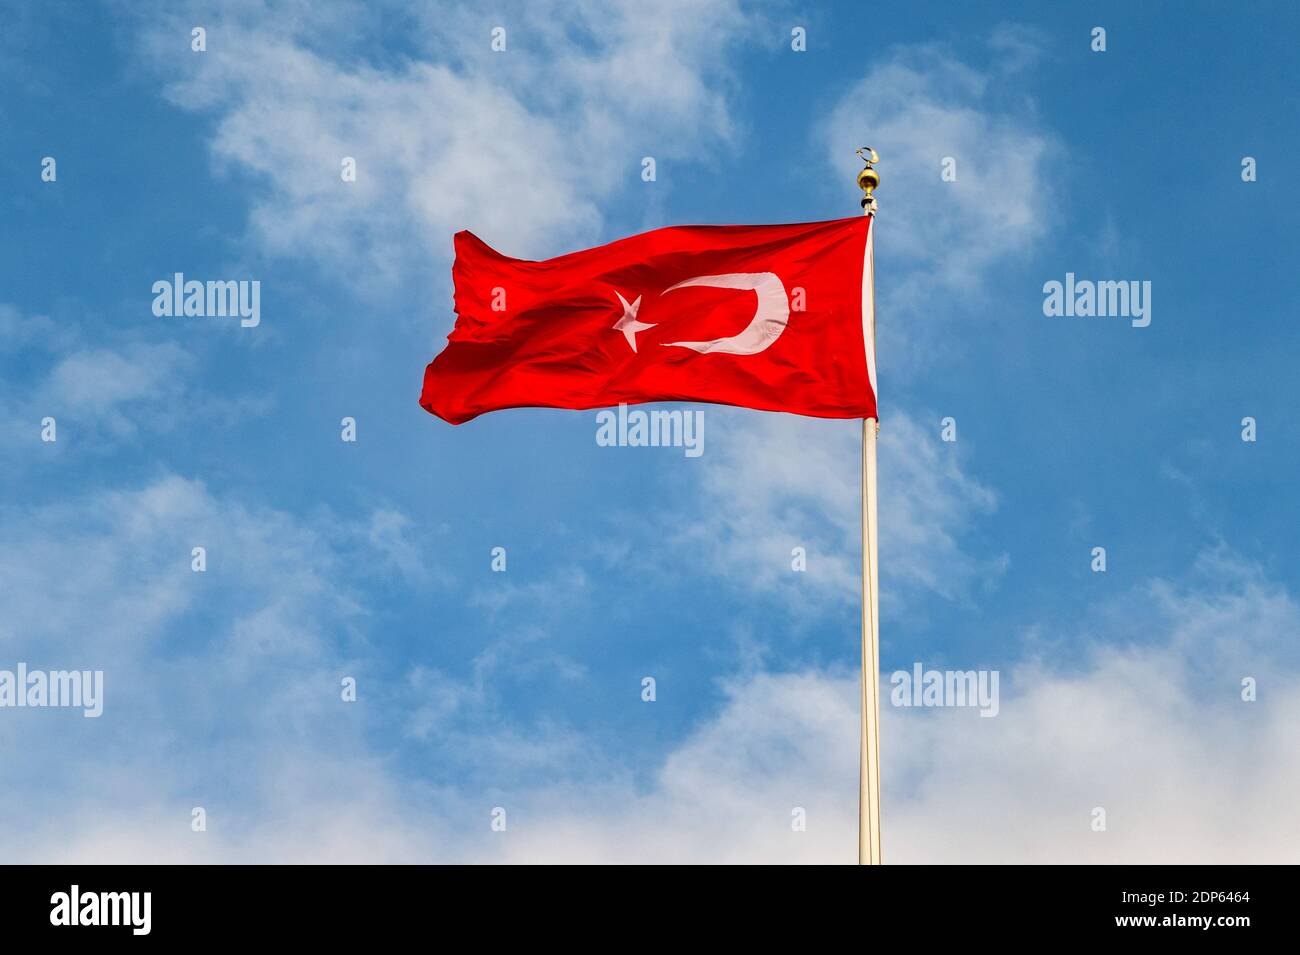 La bandiera turca è una bandiera rossa con una stella bianca e una  mezzaluna. La bandiera è spesso chiamata al bayrak (la bandiera rossa Foto  stock - Alamy